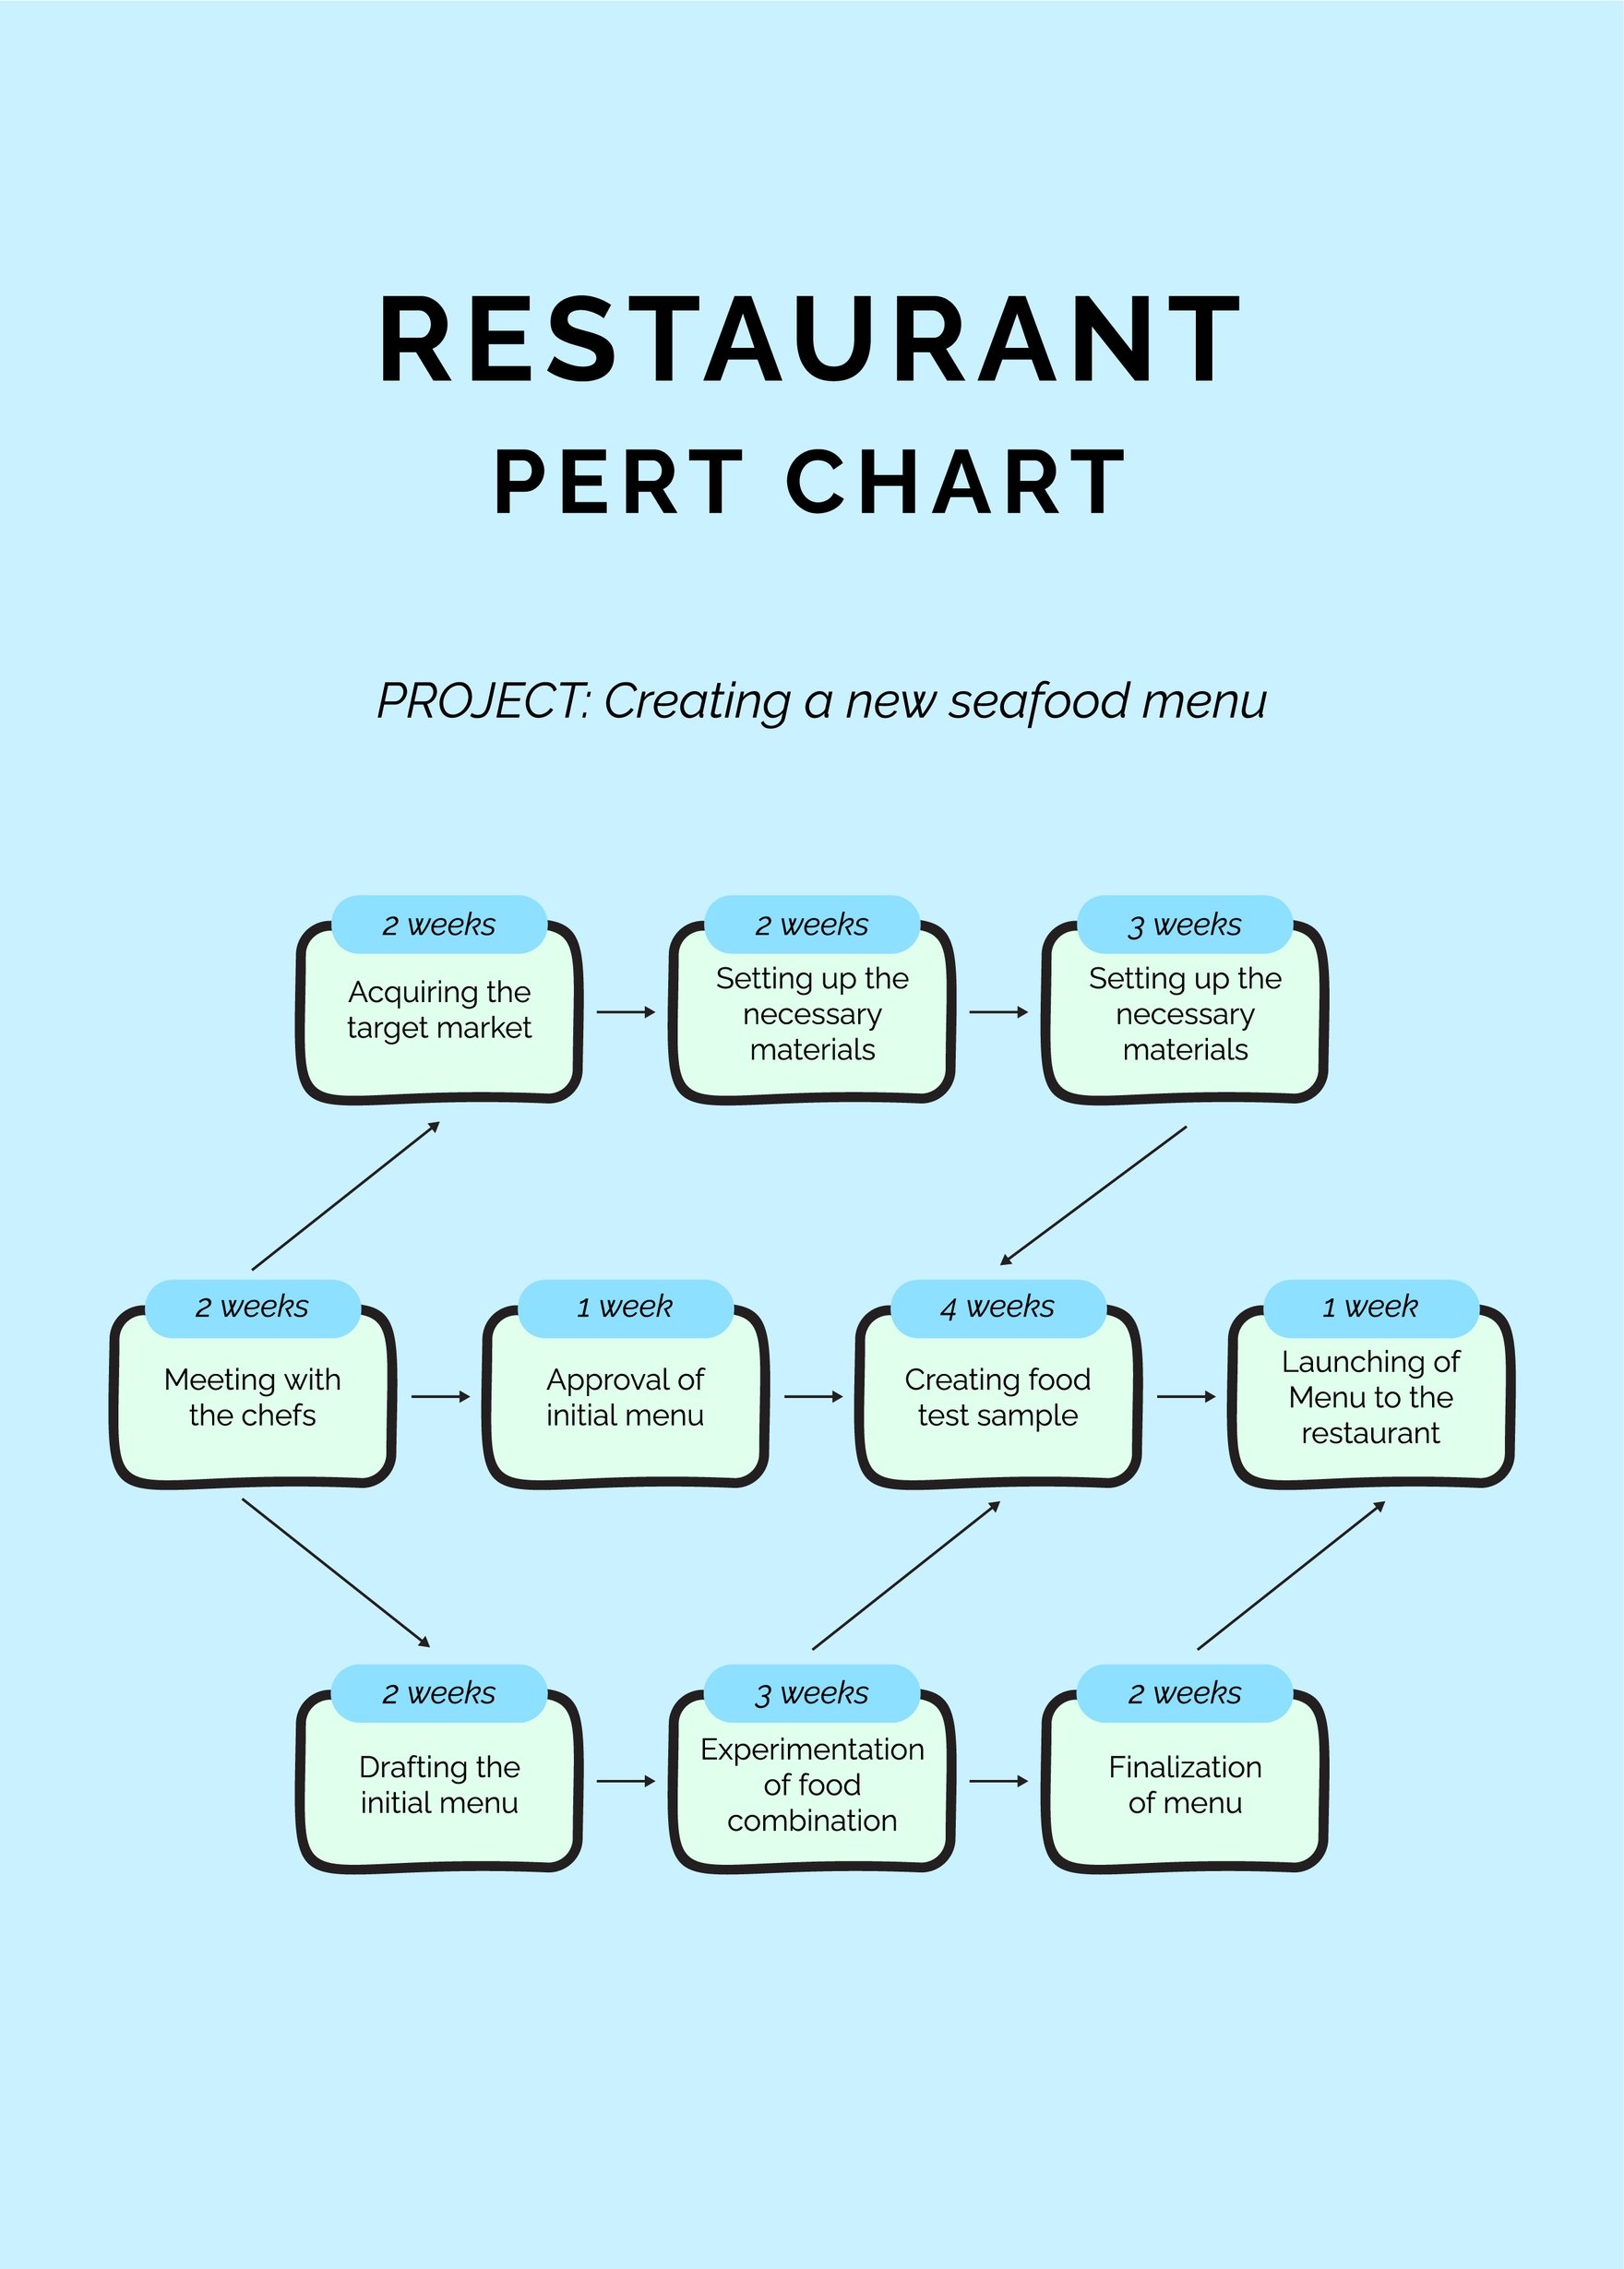 Restaurant PERT Chart in PDF, Illustrator